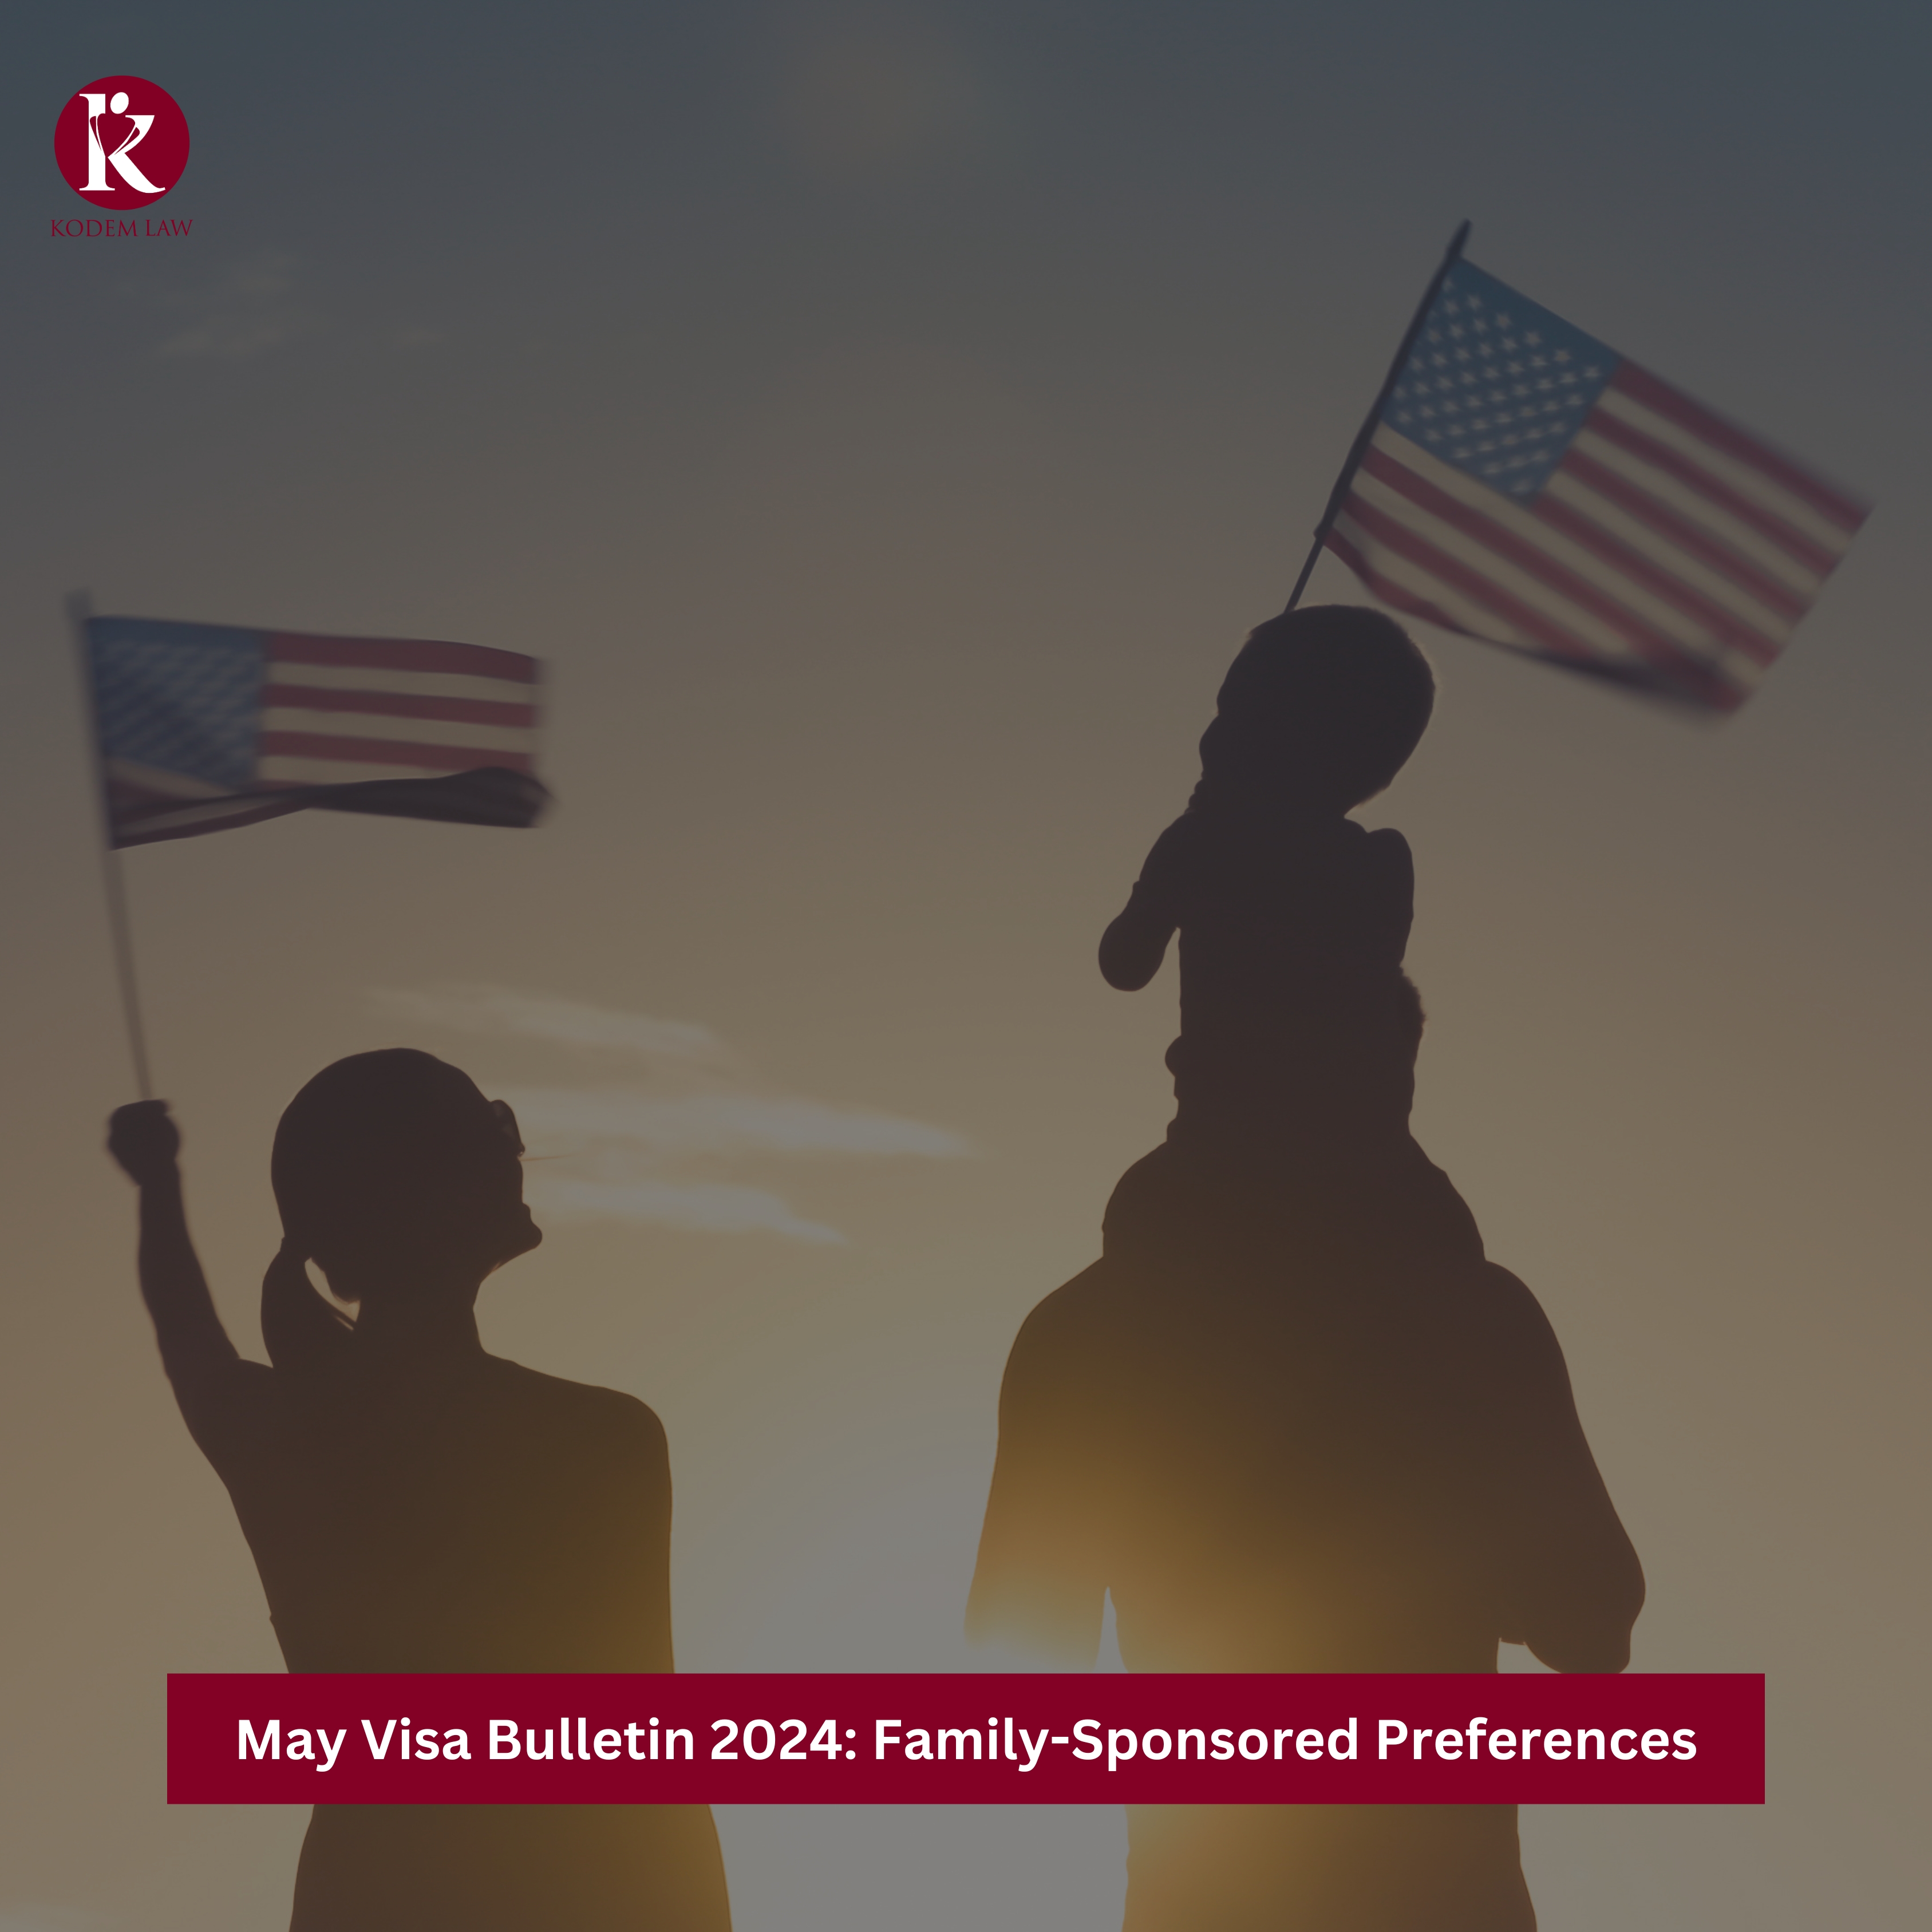 May Visa Bulletin 2024 Family-Sponsored Preferences